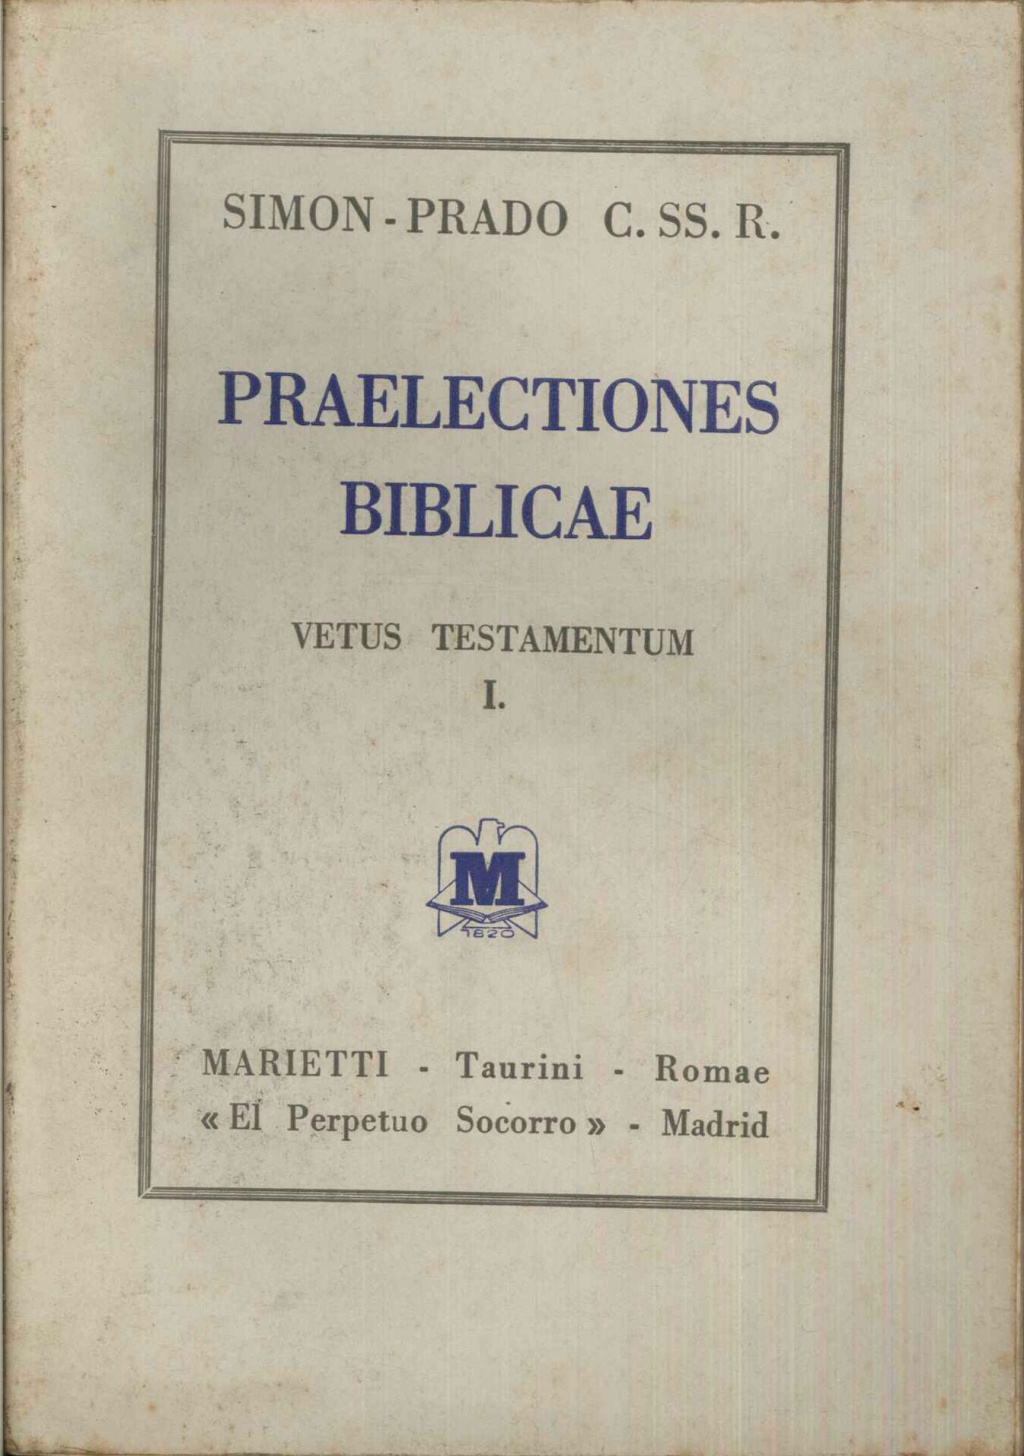 Praelectiones Biblicae vol. I vetus testamentum